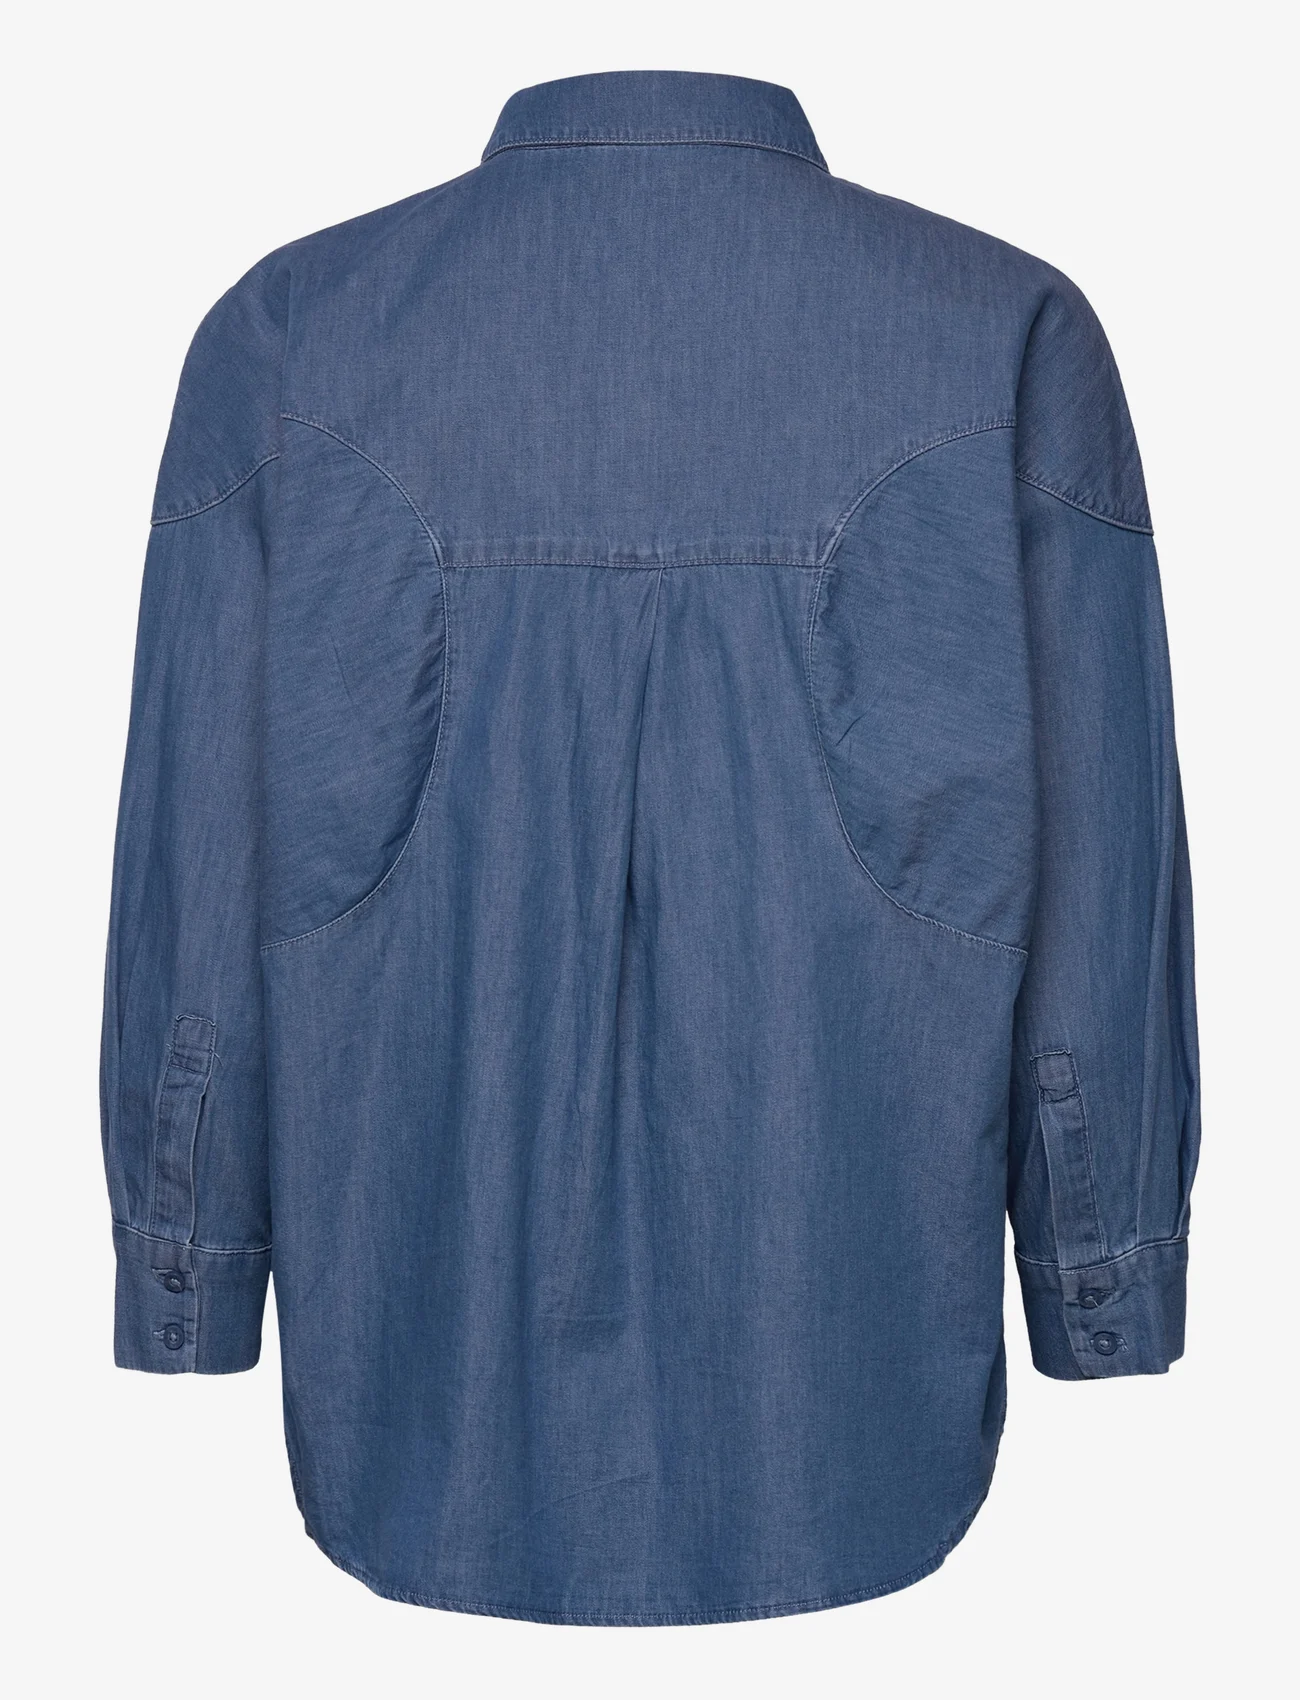 Esprit Collection - Cotton denim blouse - jeansblouses - blue medium wash - 1